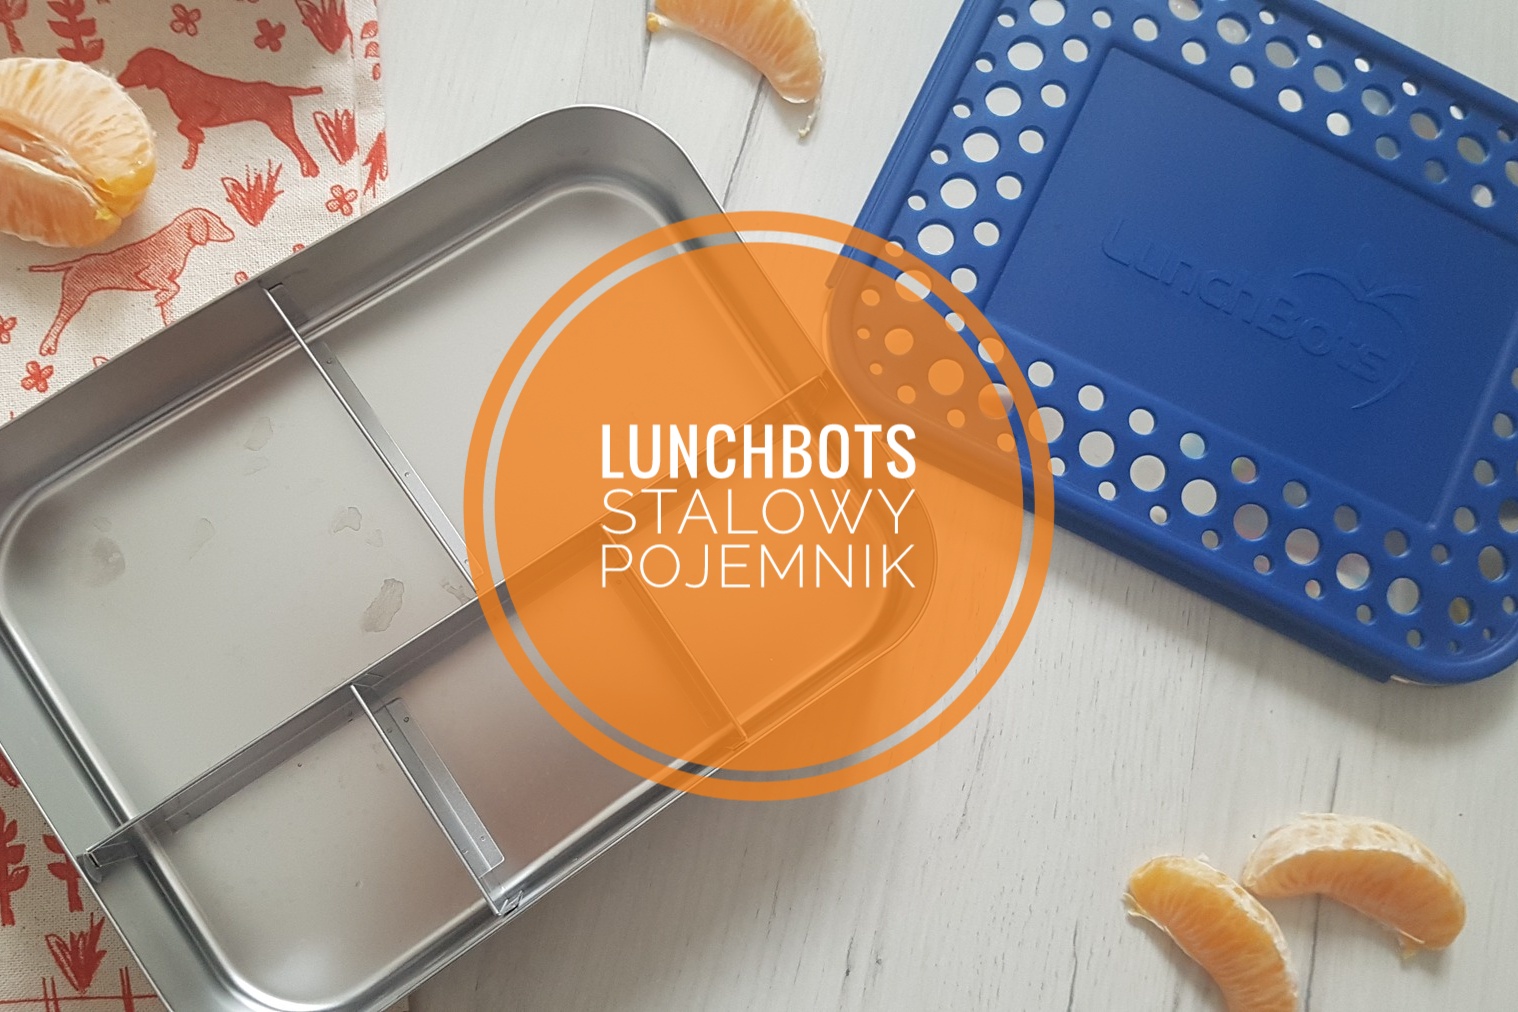 Lunchbots stalowy pojemnik